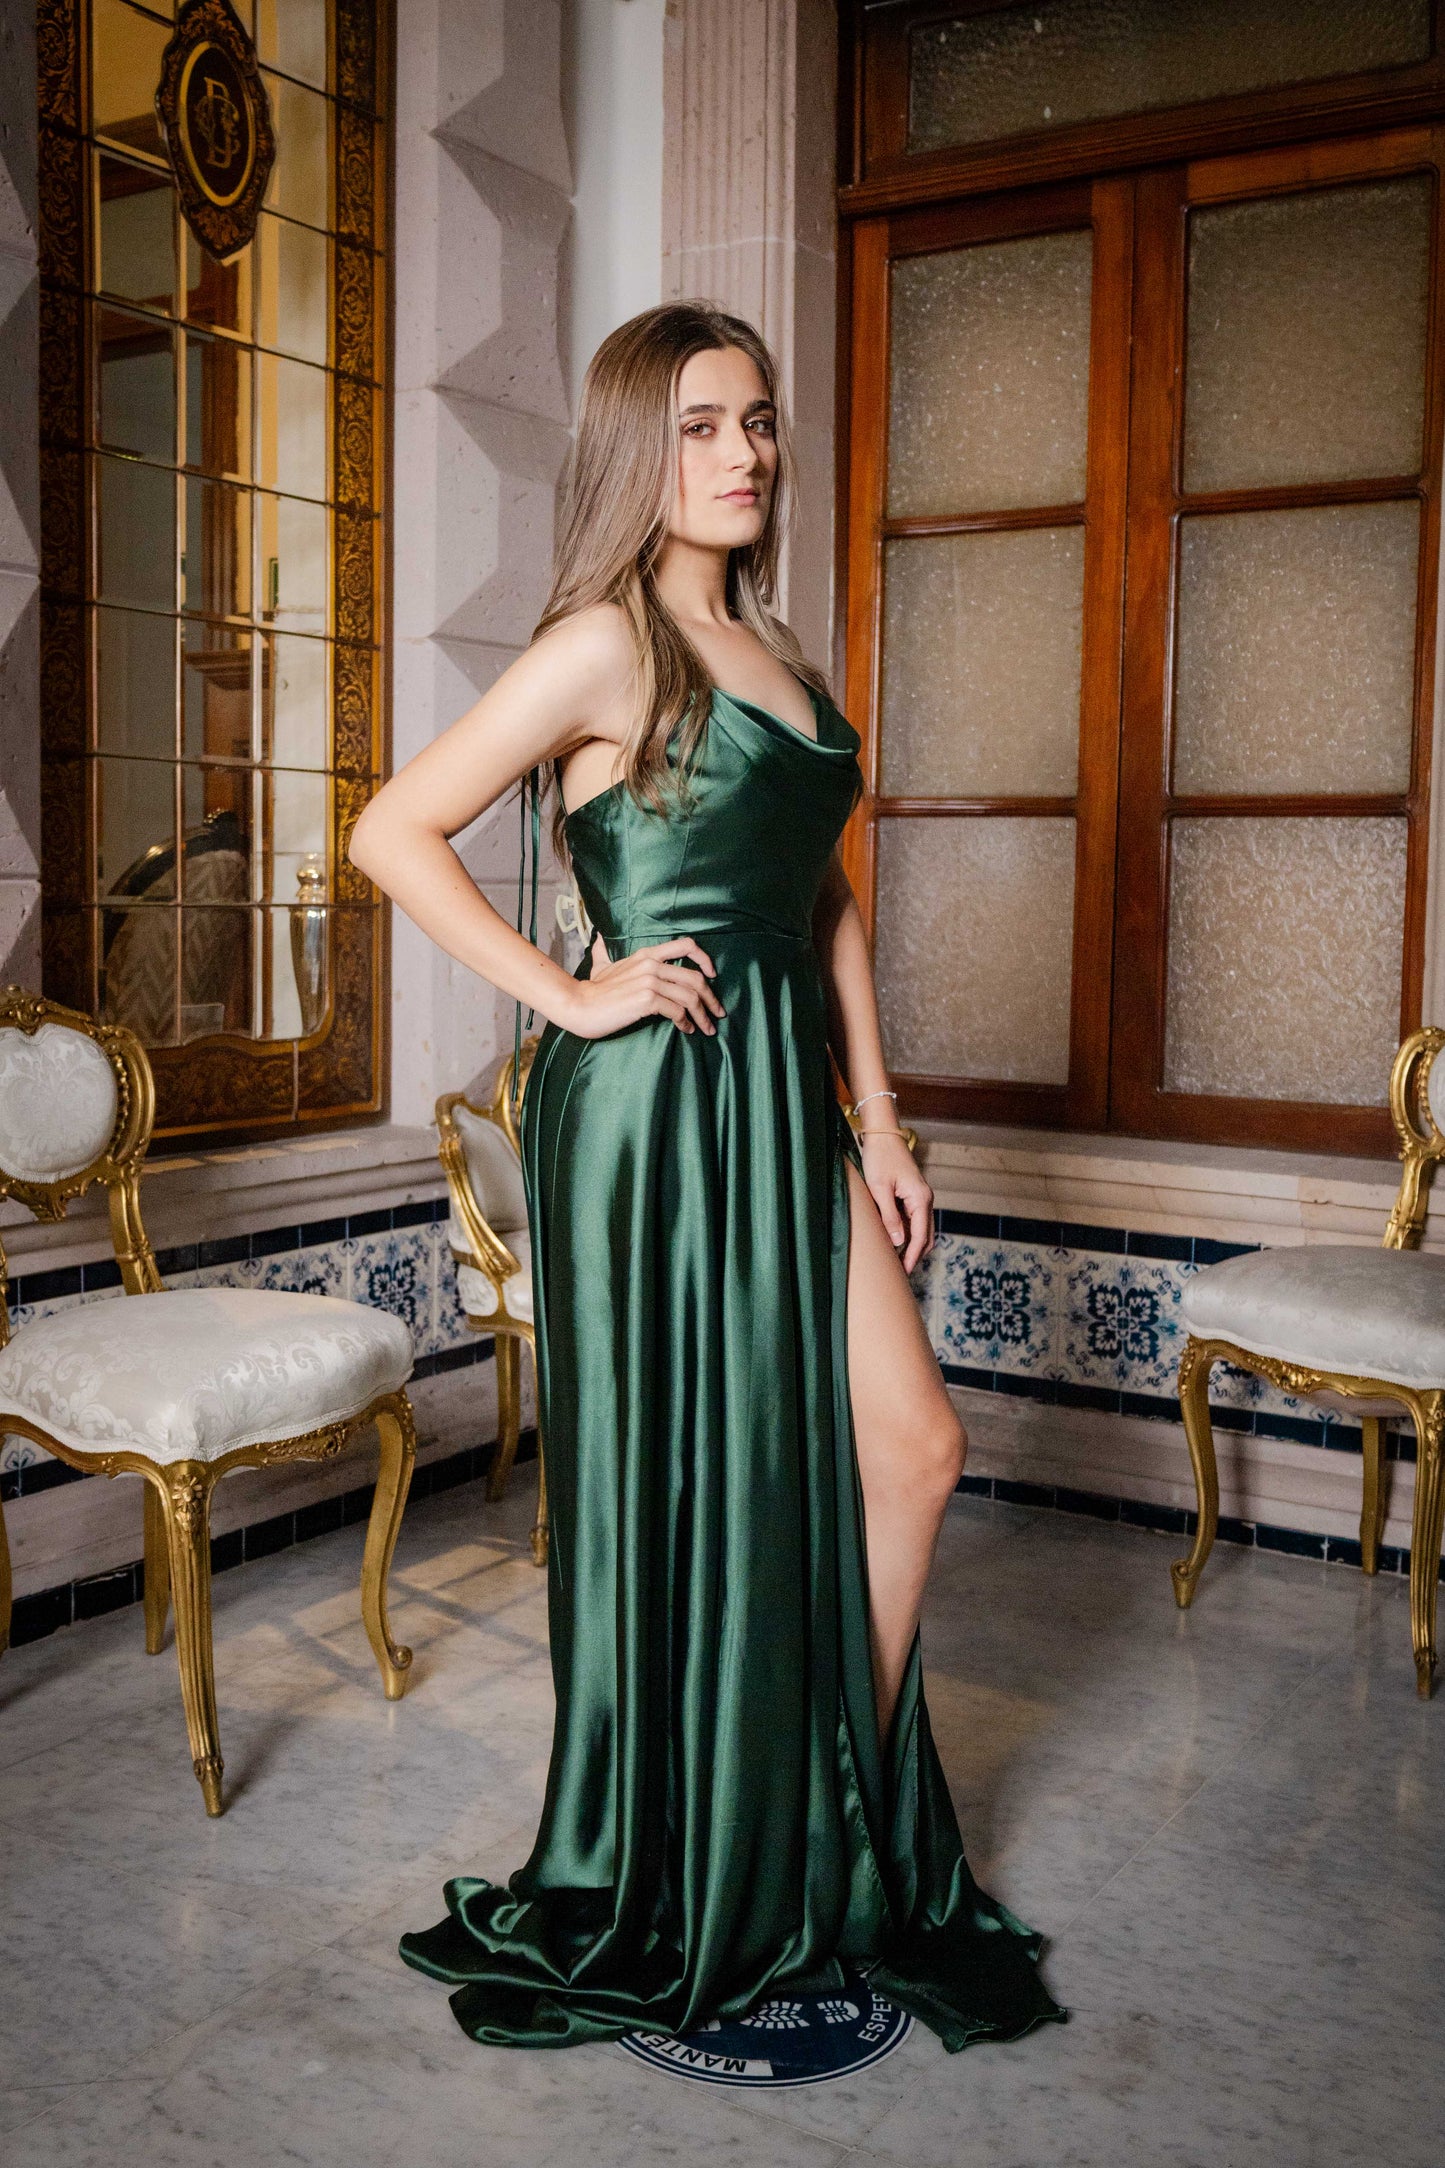 Vestido de dama de honor corte ajustado con tela satinada color esmeralda